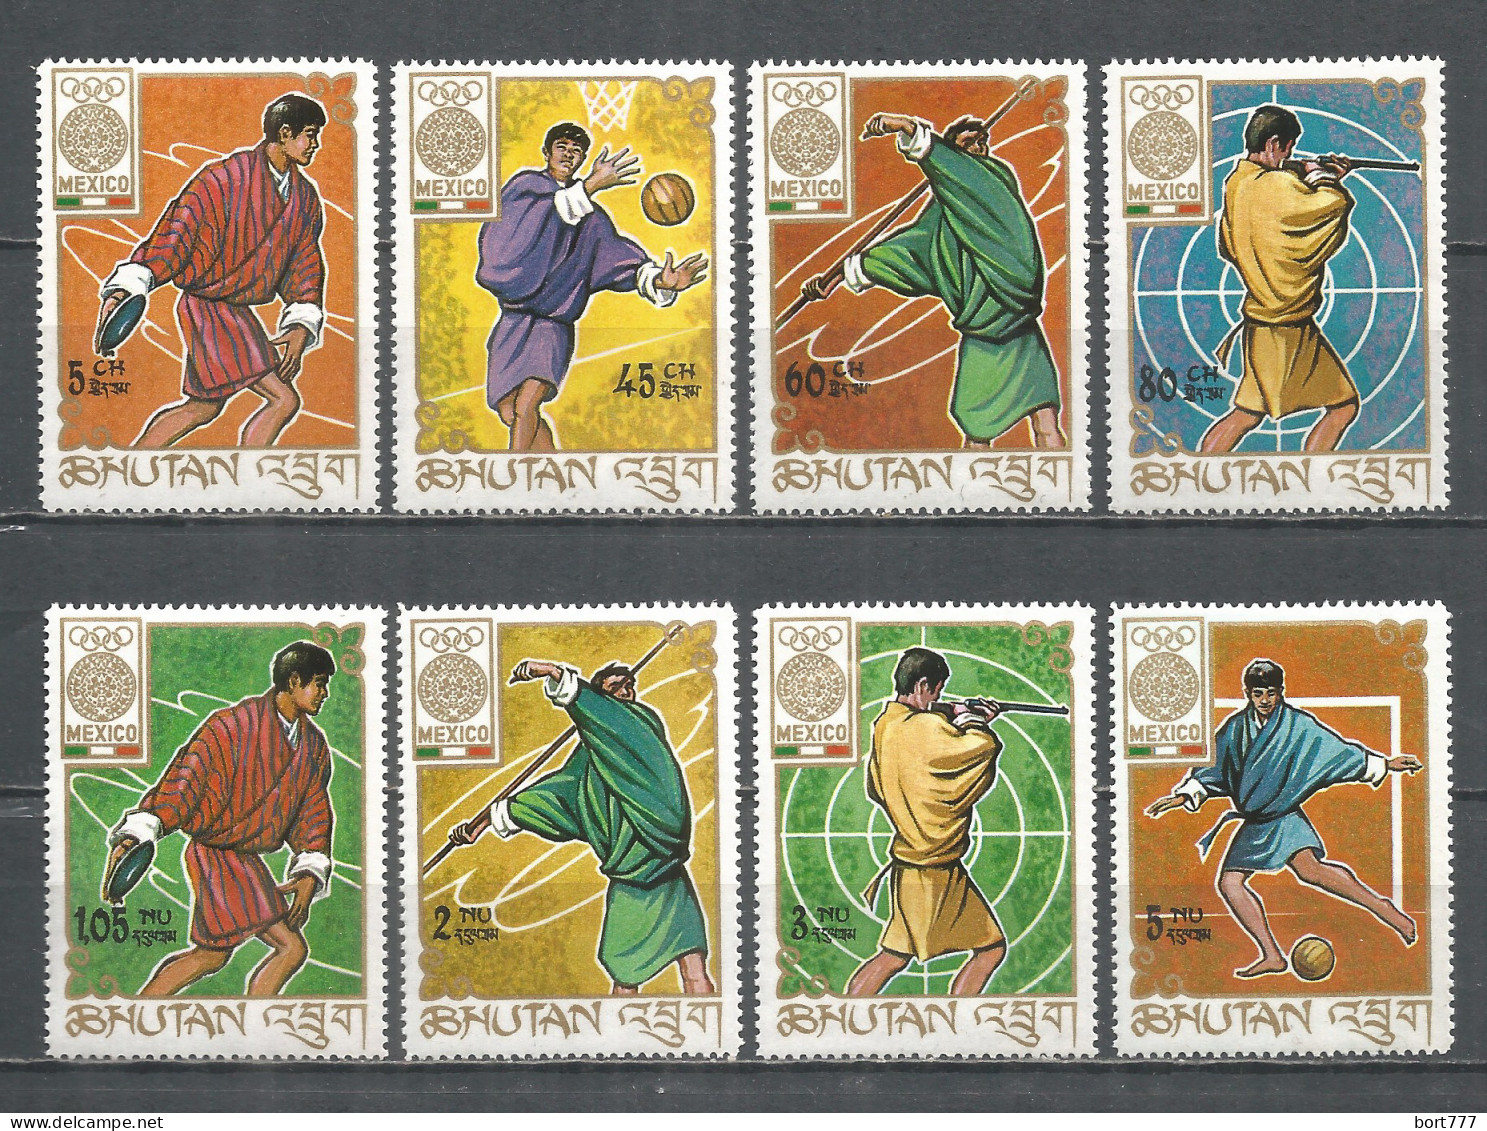 Bhutan 1968 Mint Stamps Set MNH (**) - Bhutan